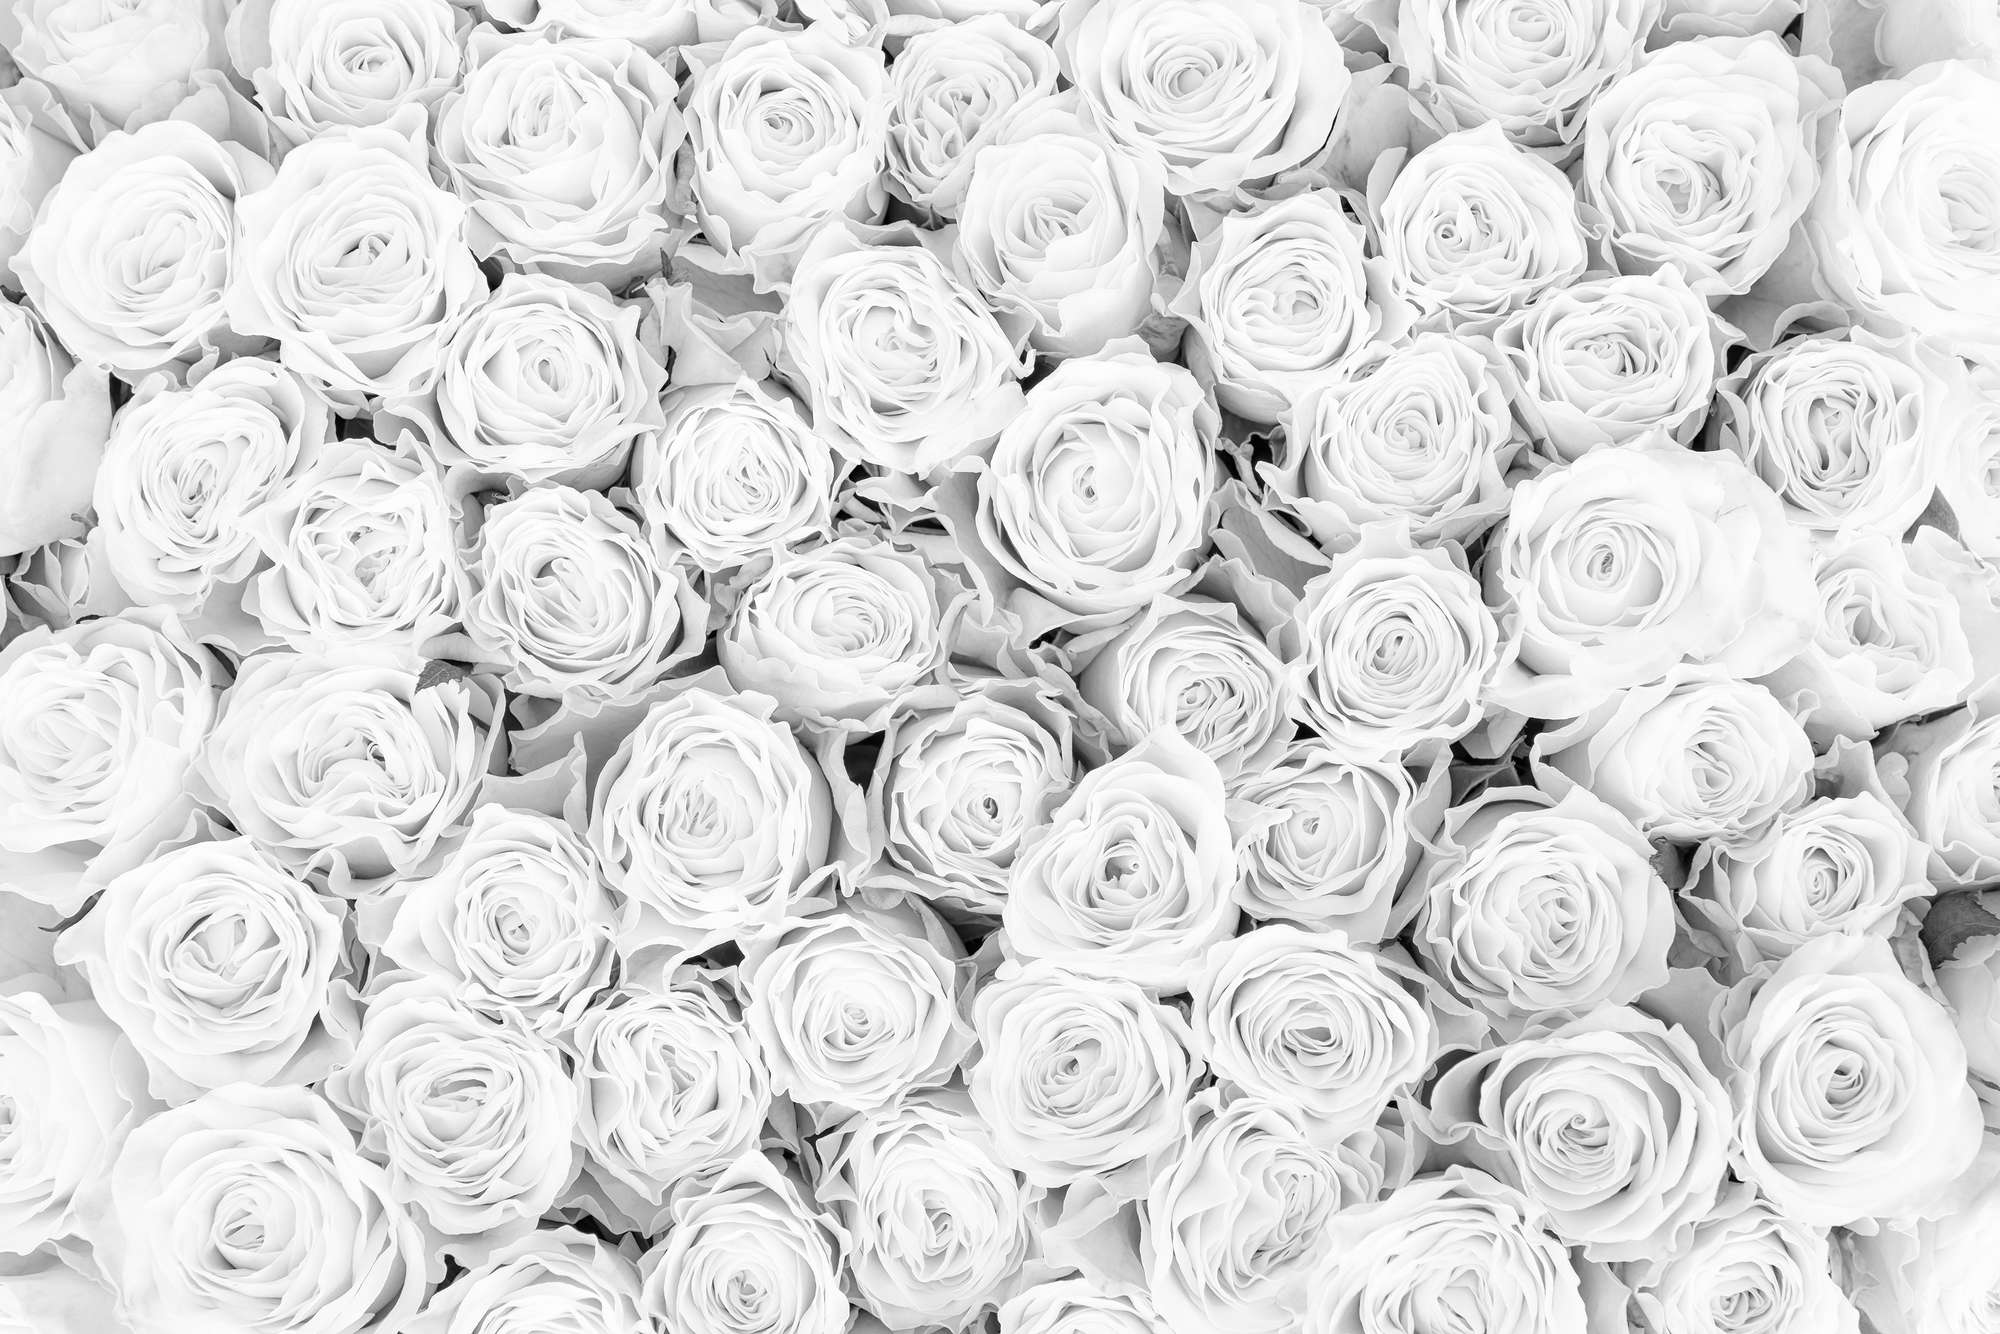             Pflanzen Fototapete weiße Rosen auf Matt Glattvlies
        